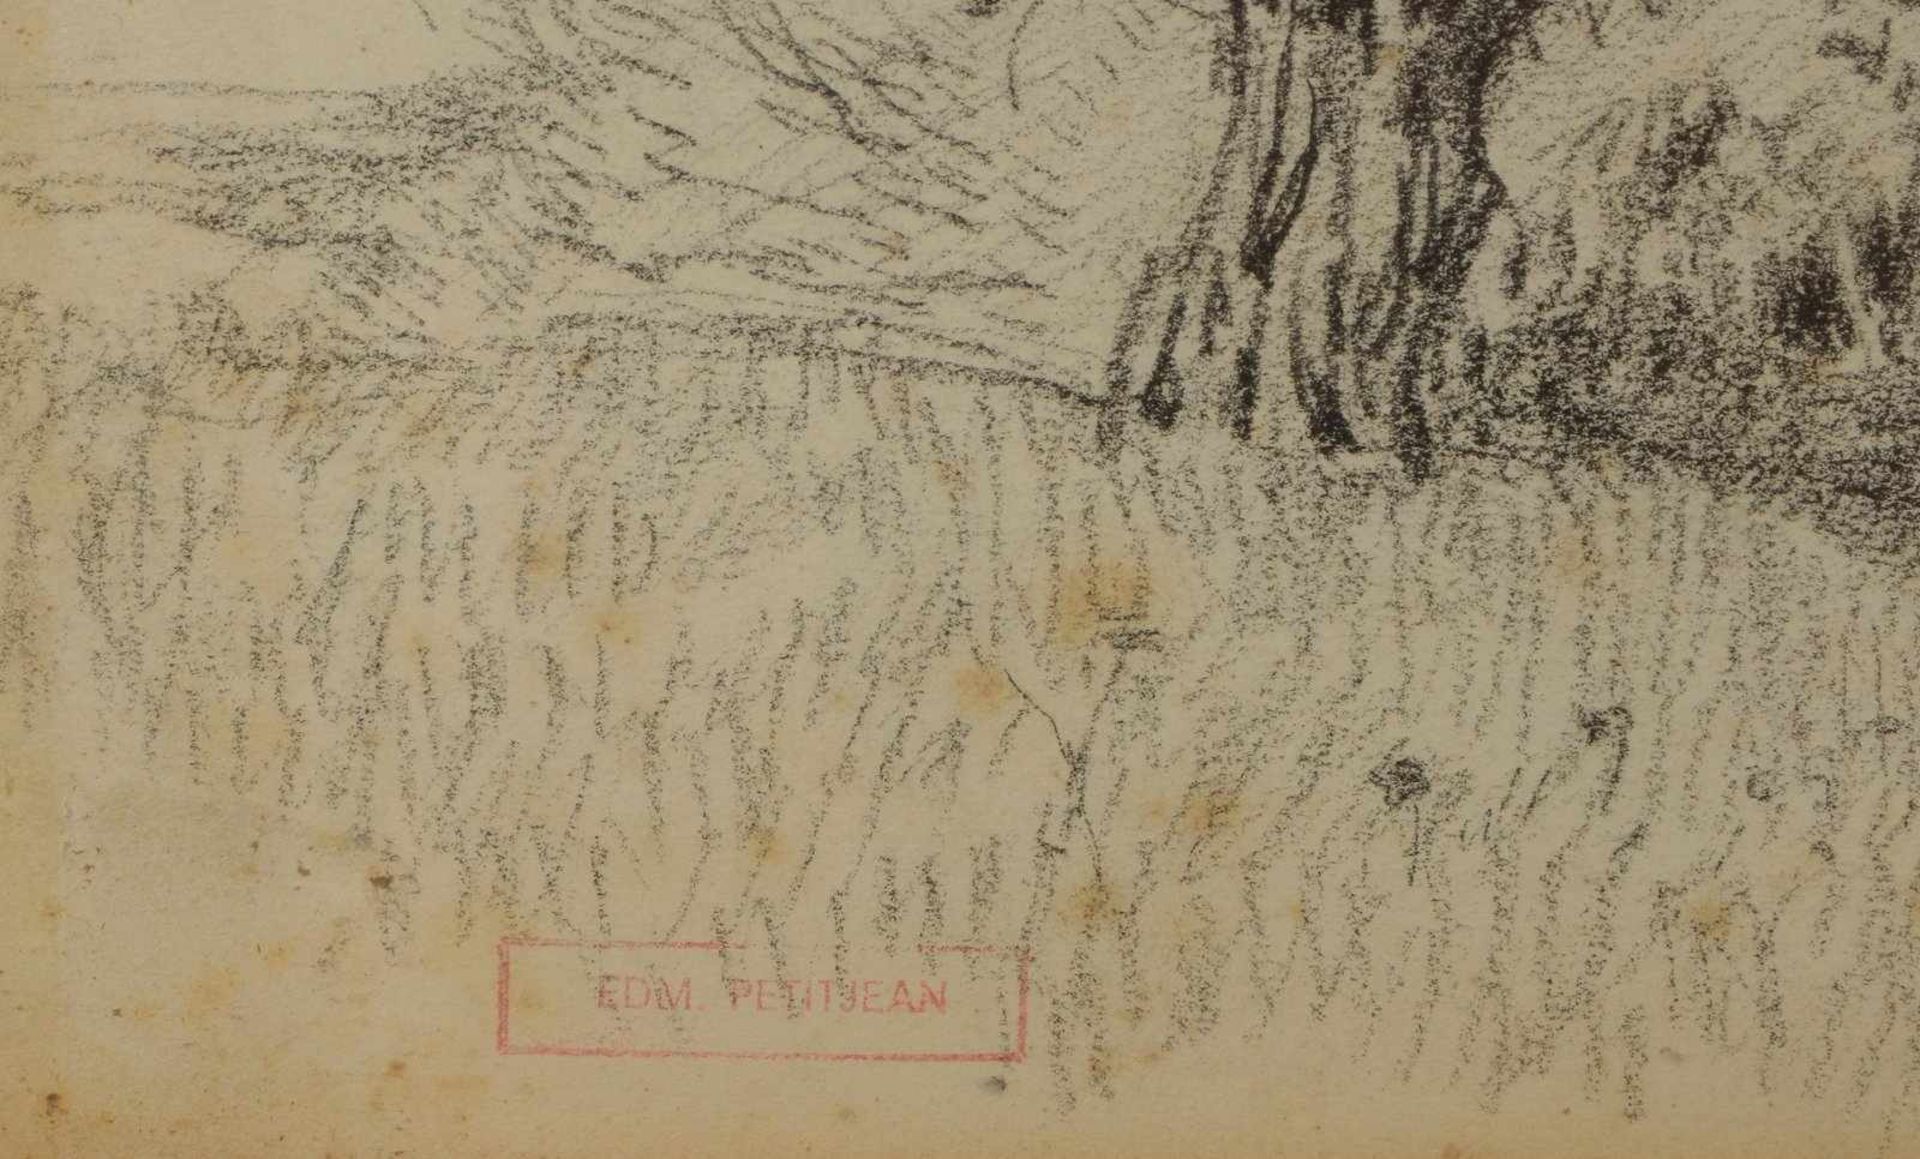 Petitjean, Edmond-Marie(?), 'Blick auf Gehöft', Kohlezeichnung, unten links mit Signaturstempel, - Bild 2 aus 2